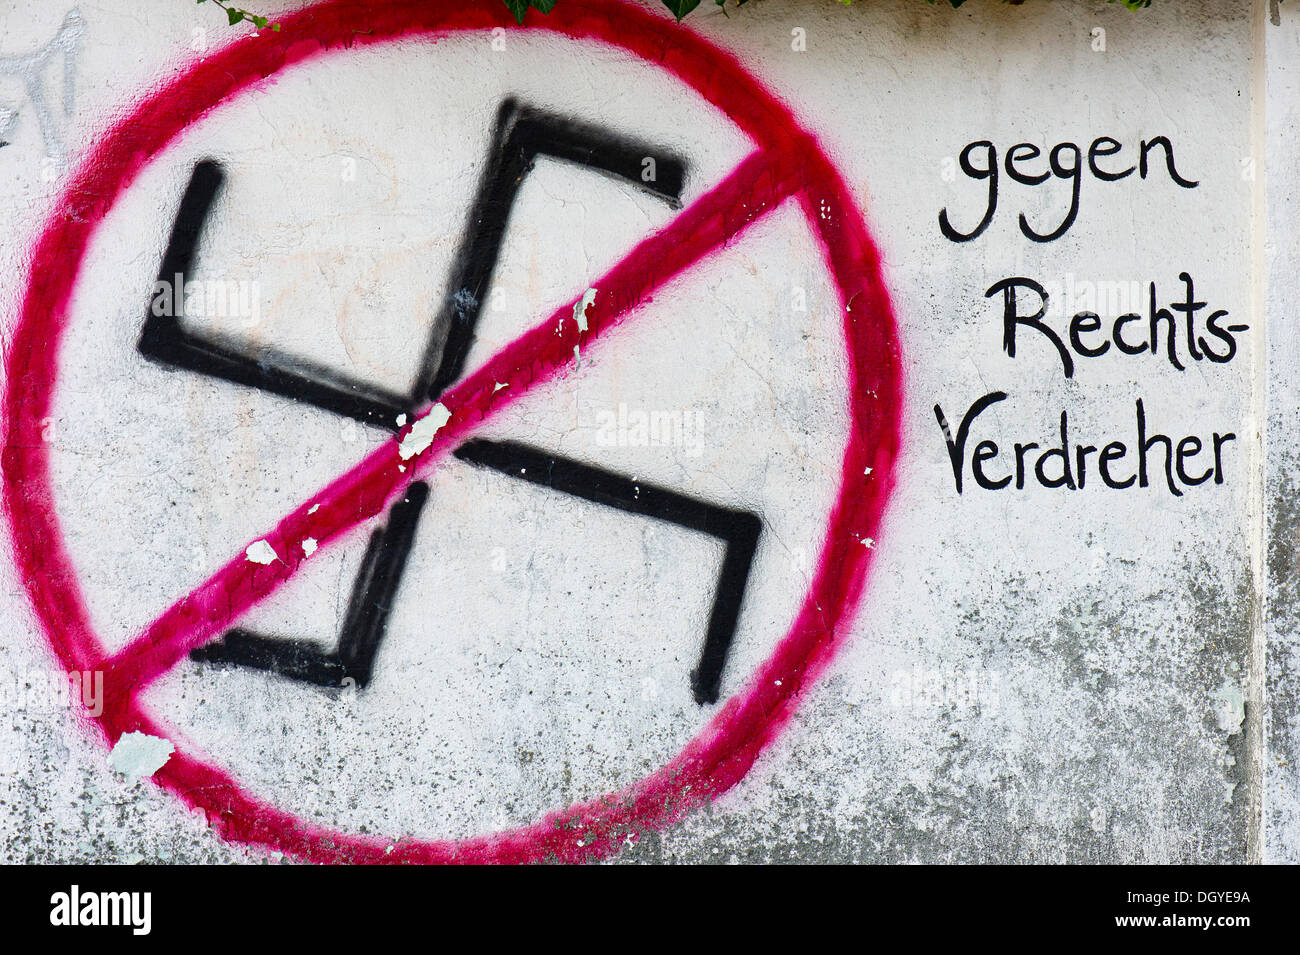 Tachado esvástica en una pared, rotulación "gegen Rechts-Verdreher', 'contra el alemán para los radicales de derechas", Tuebingen Foto de stock